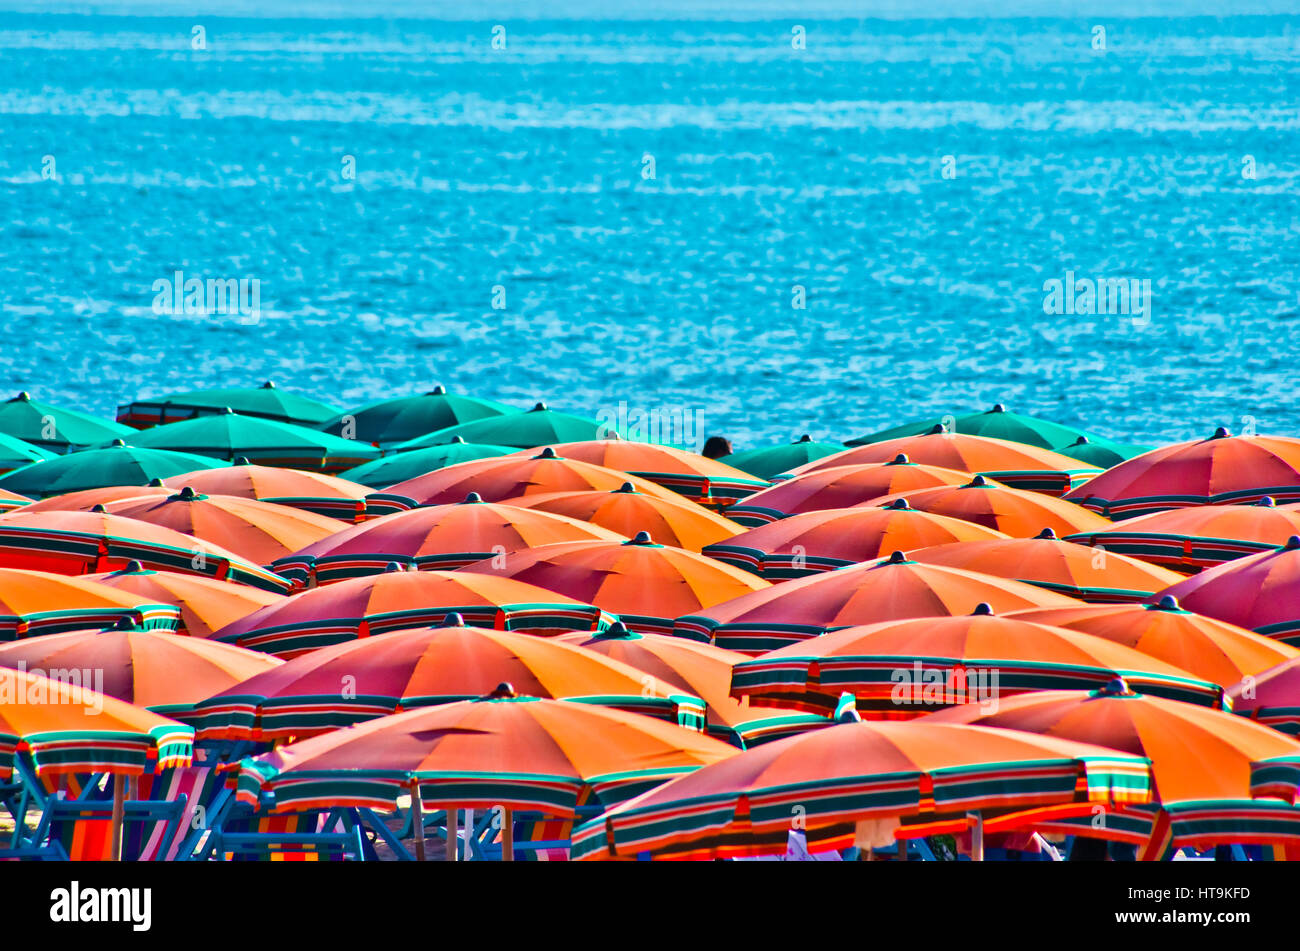 Parapluies orange en été avec la mer bleue en arrière-plan Banque D'Images